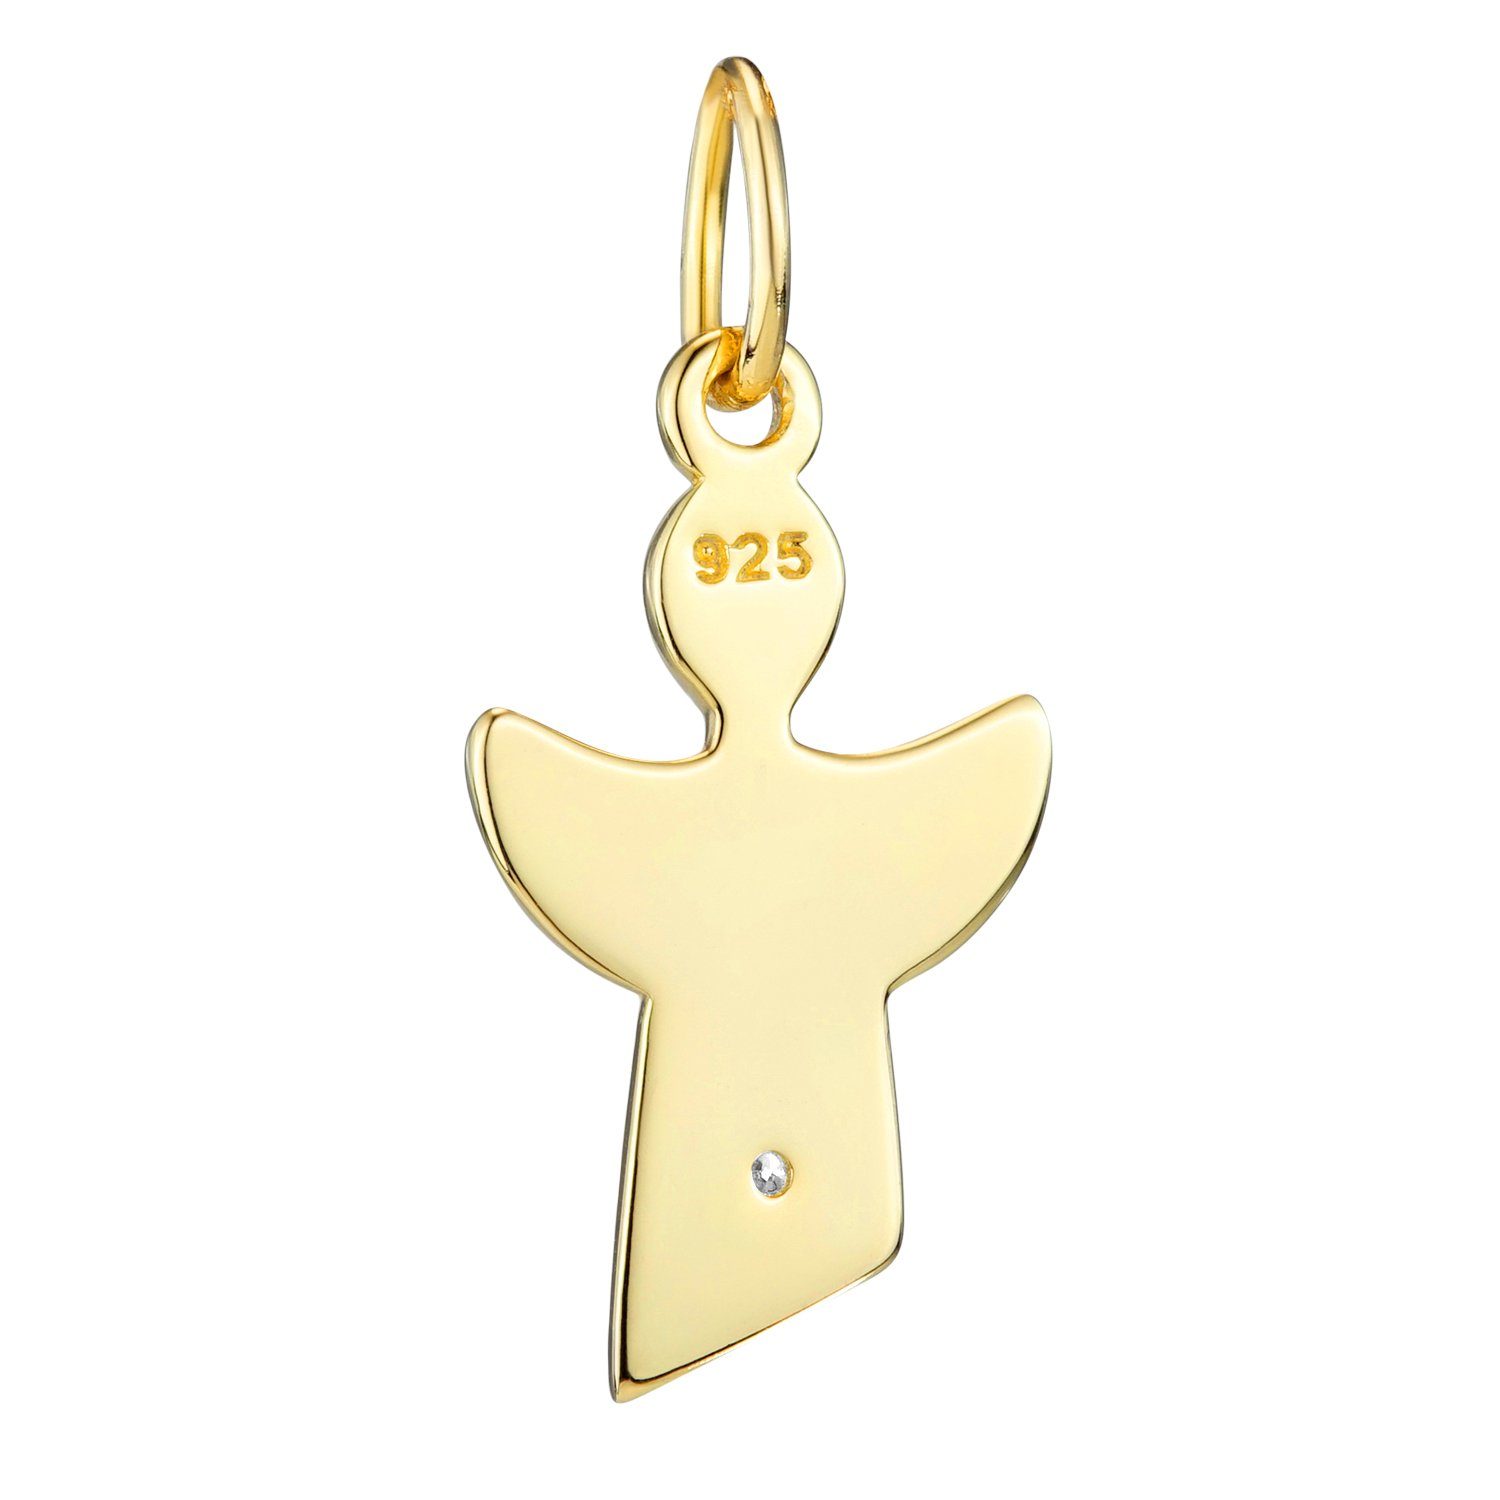 Sterlingsilber, Schutzengel Gold Zirkonia weiß vergoldet KA-459, Engelanhänger Materia